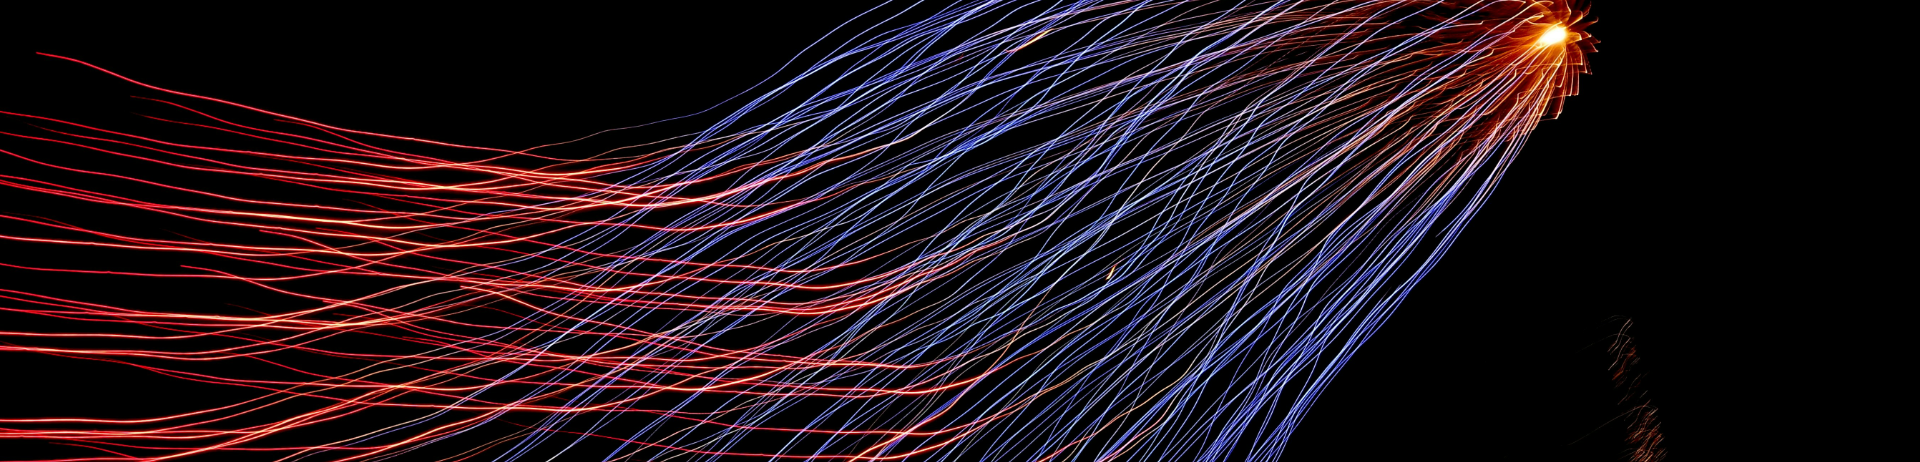 Dessin numérique abstrait : vague de filaments bleus, violets et rouges sur fond noir